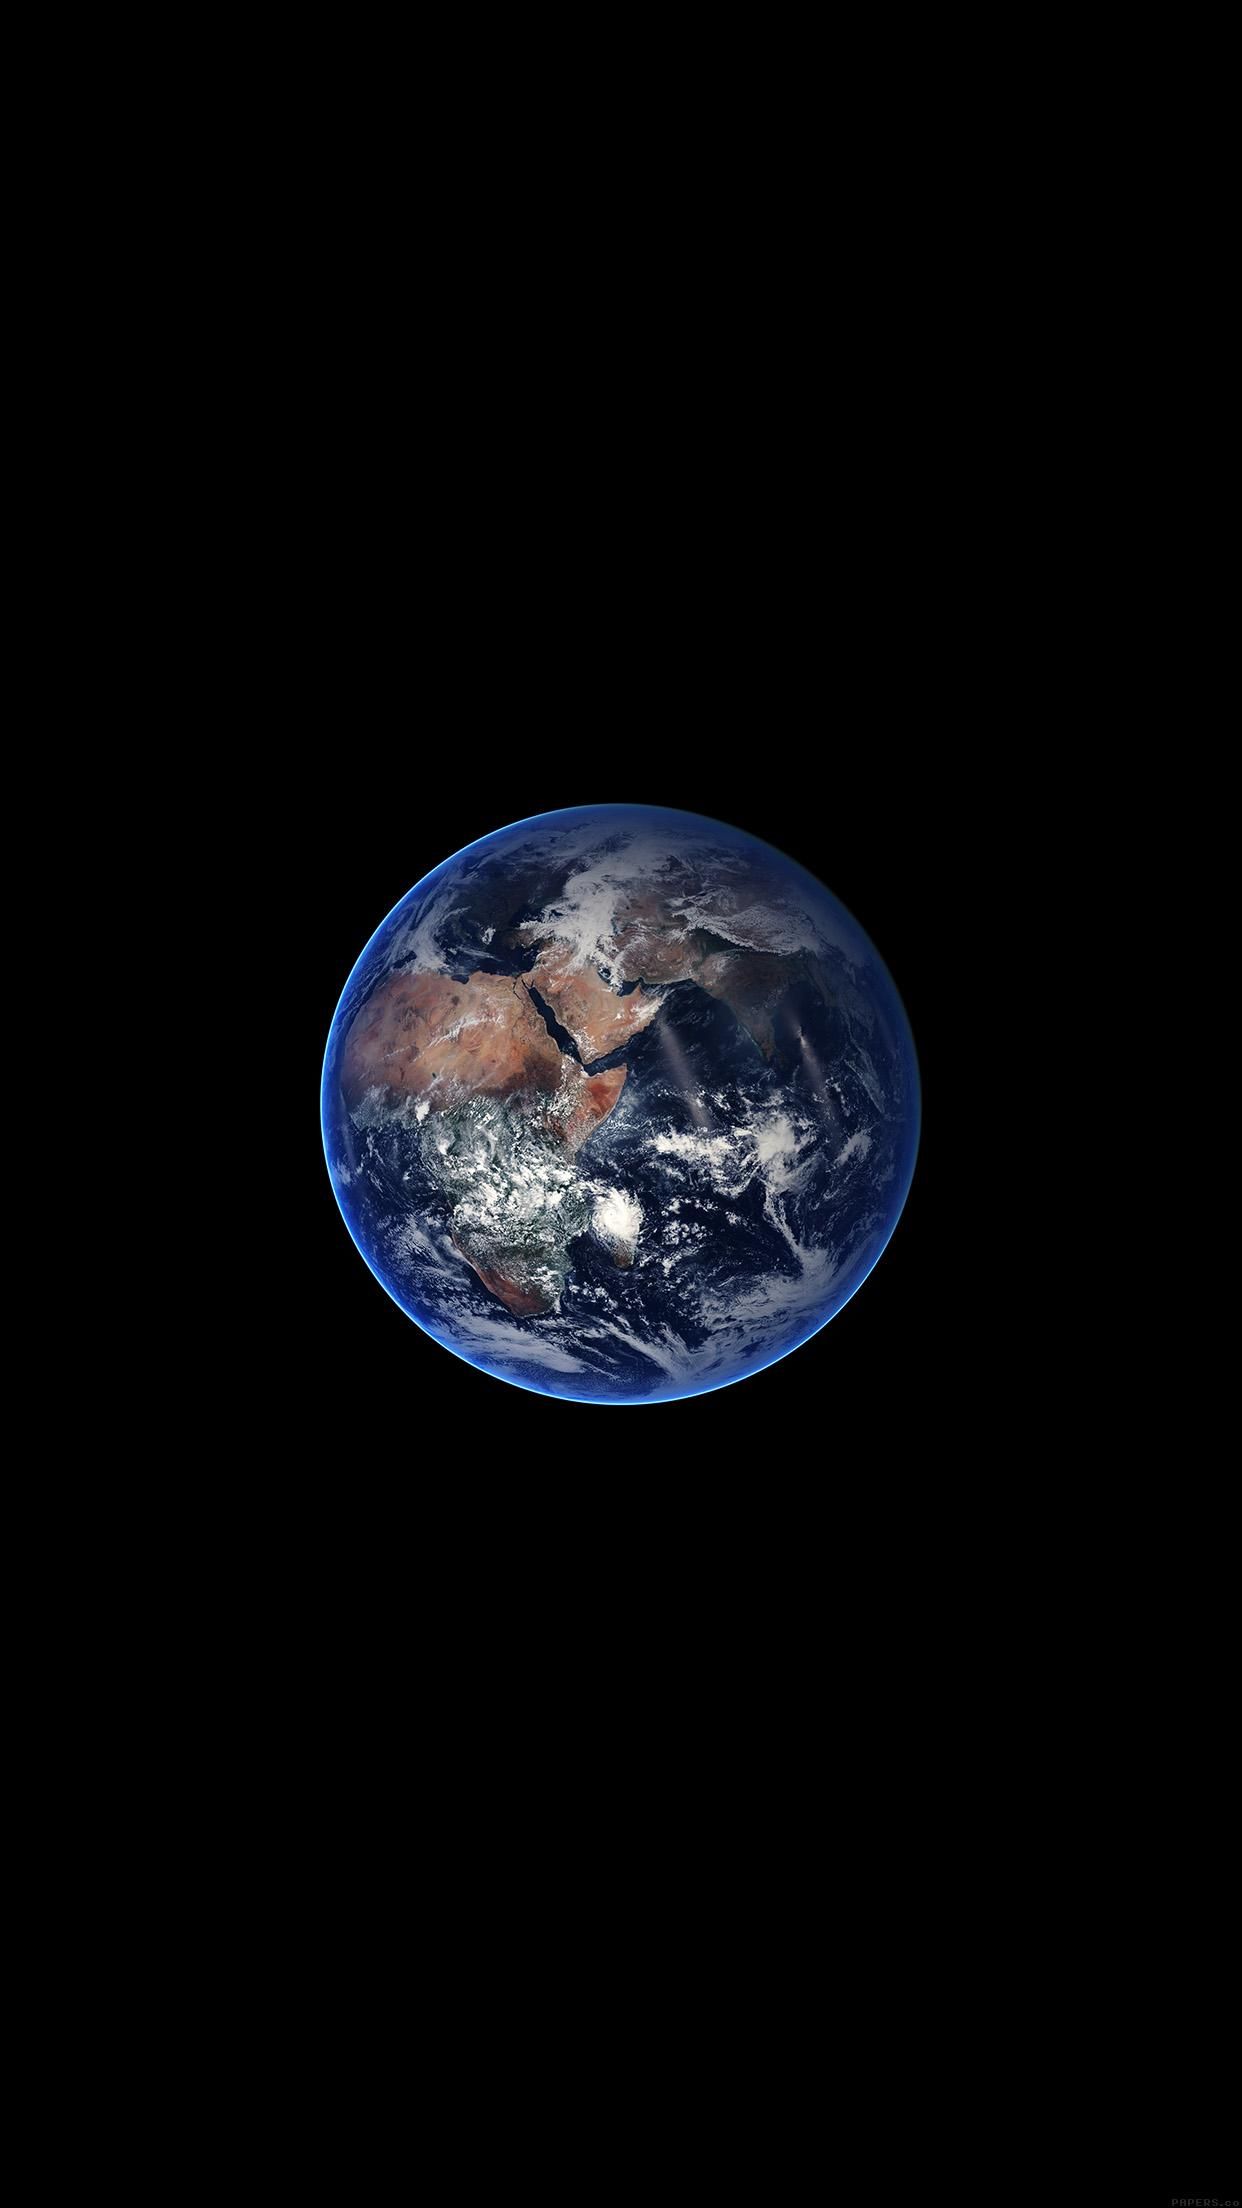 تصویر خوشگل کره زمین به صورت عمودی برای استوری